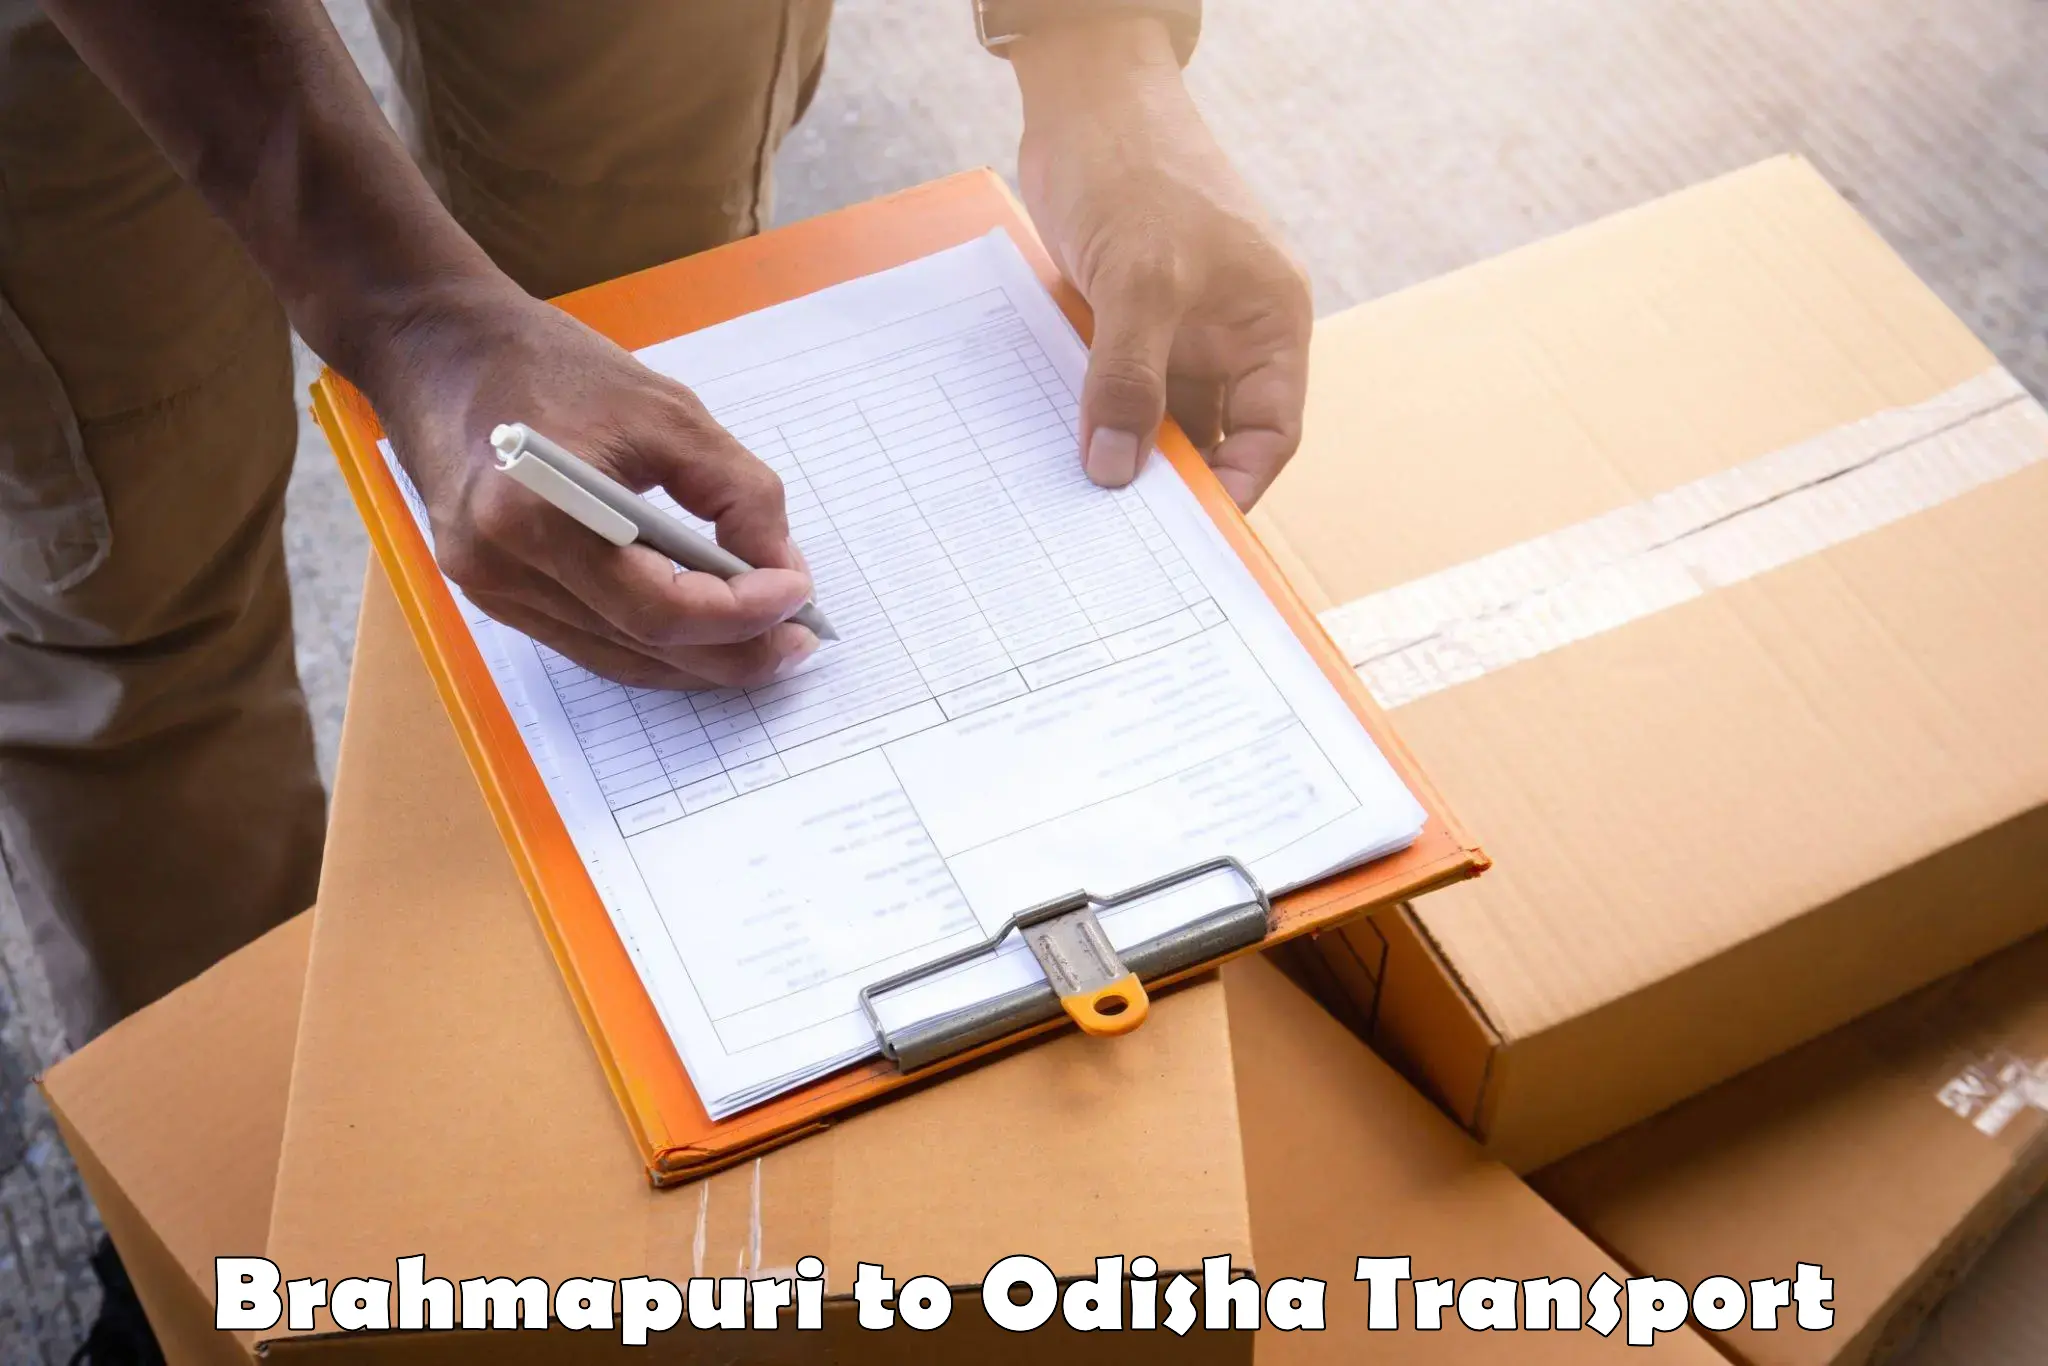 Daily transport service Brahmapuri to Agarpada